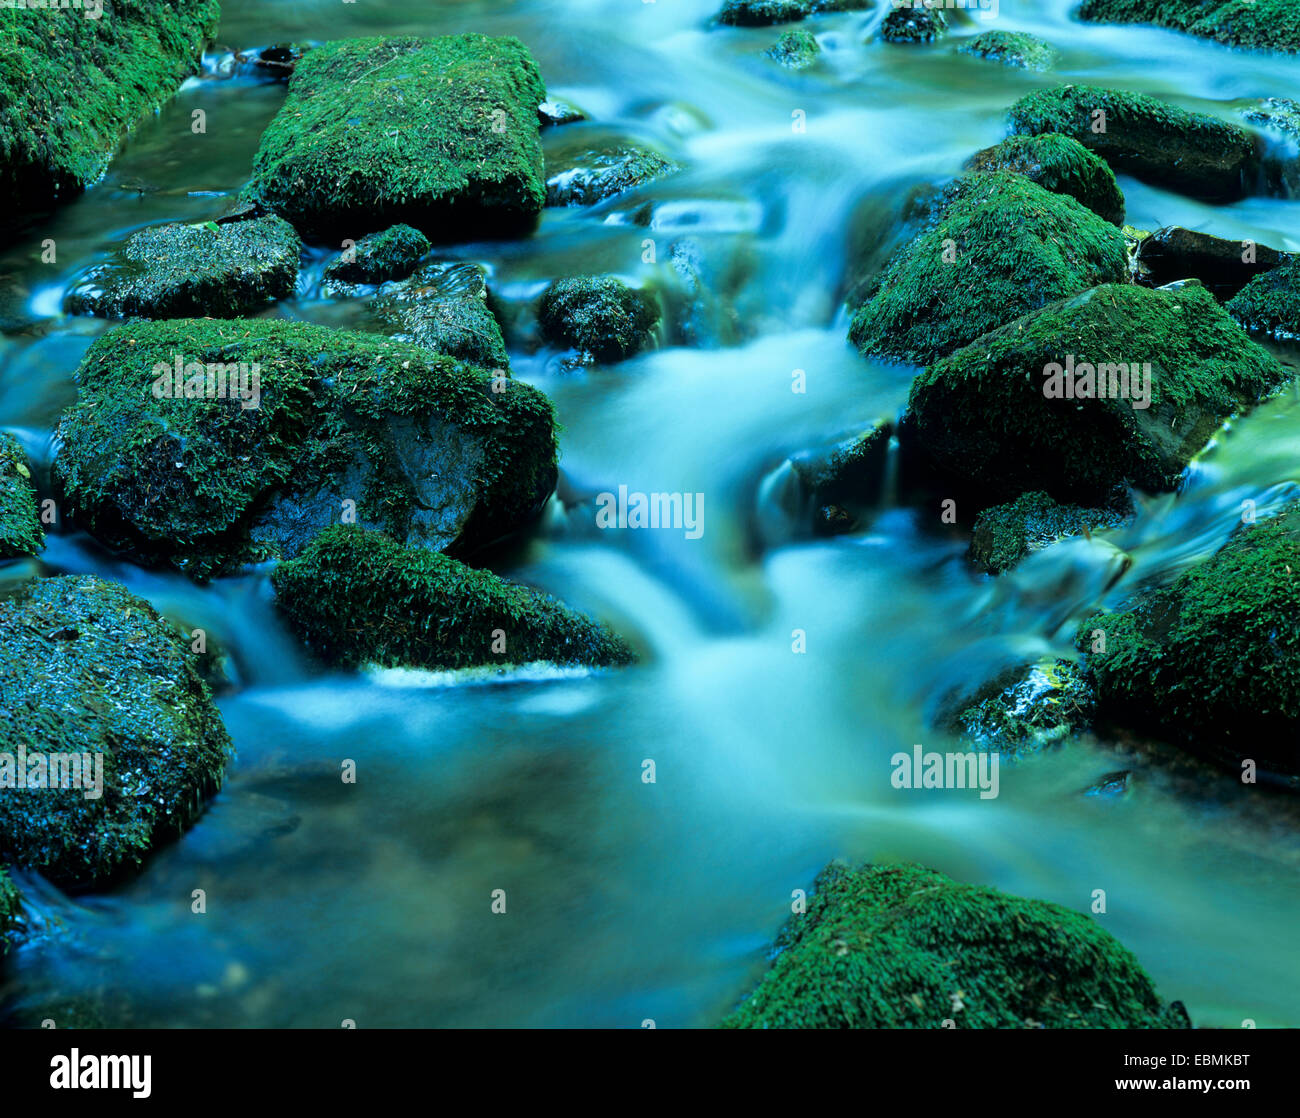 Wild Behälters River, smaragdgrünen Wasser fließt zwischen moosbewachsenen Steinen, Biosphärenreservat Vesser, Thüringen, Deutschland Stockfoto